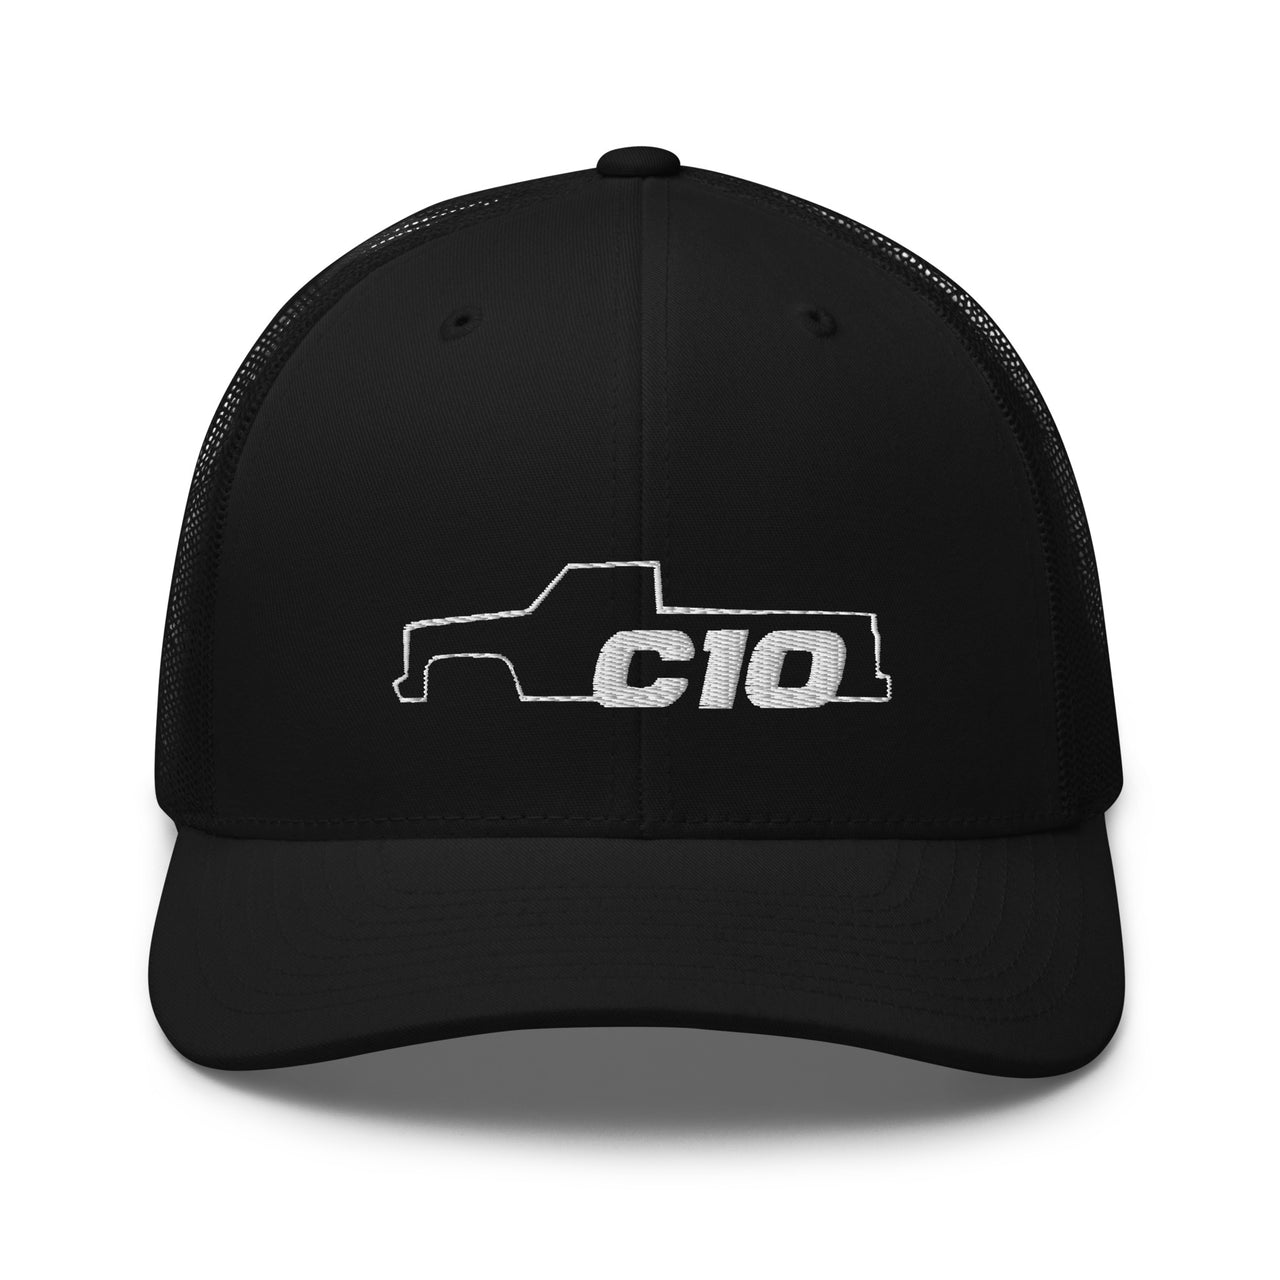 C10 Trucker hat in black